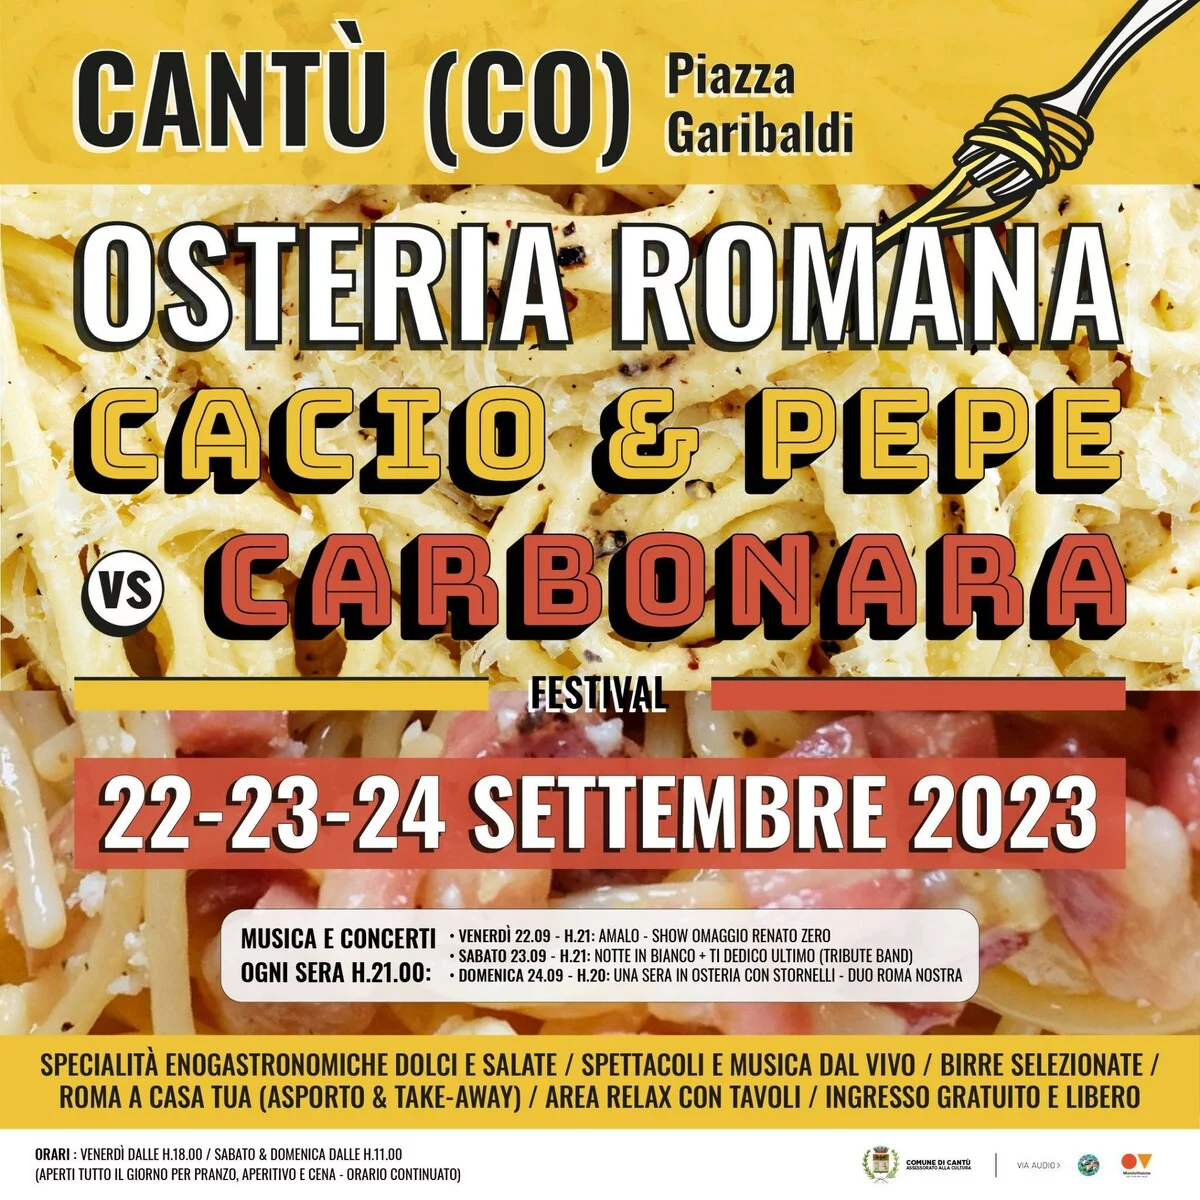 Osteria Romana: Cacio & Pepe VS Carbonara Festival - Cantù